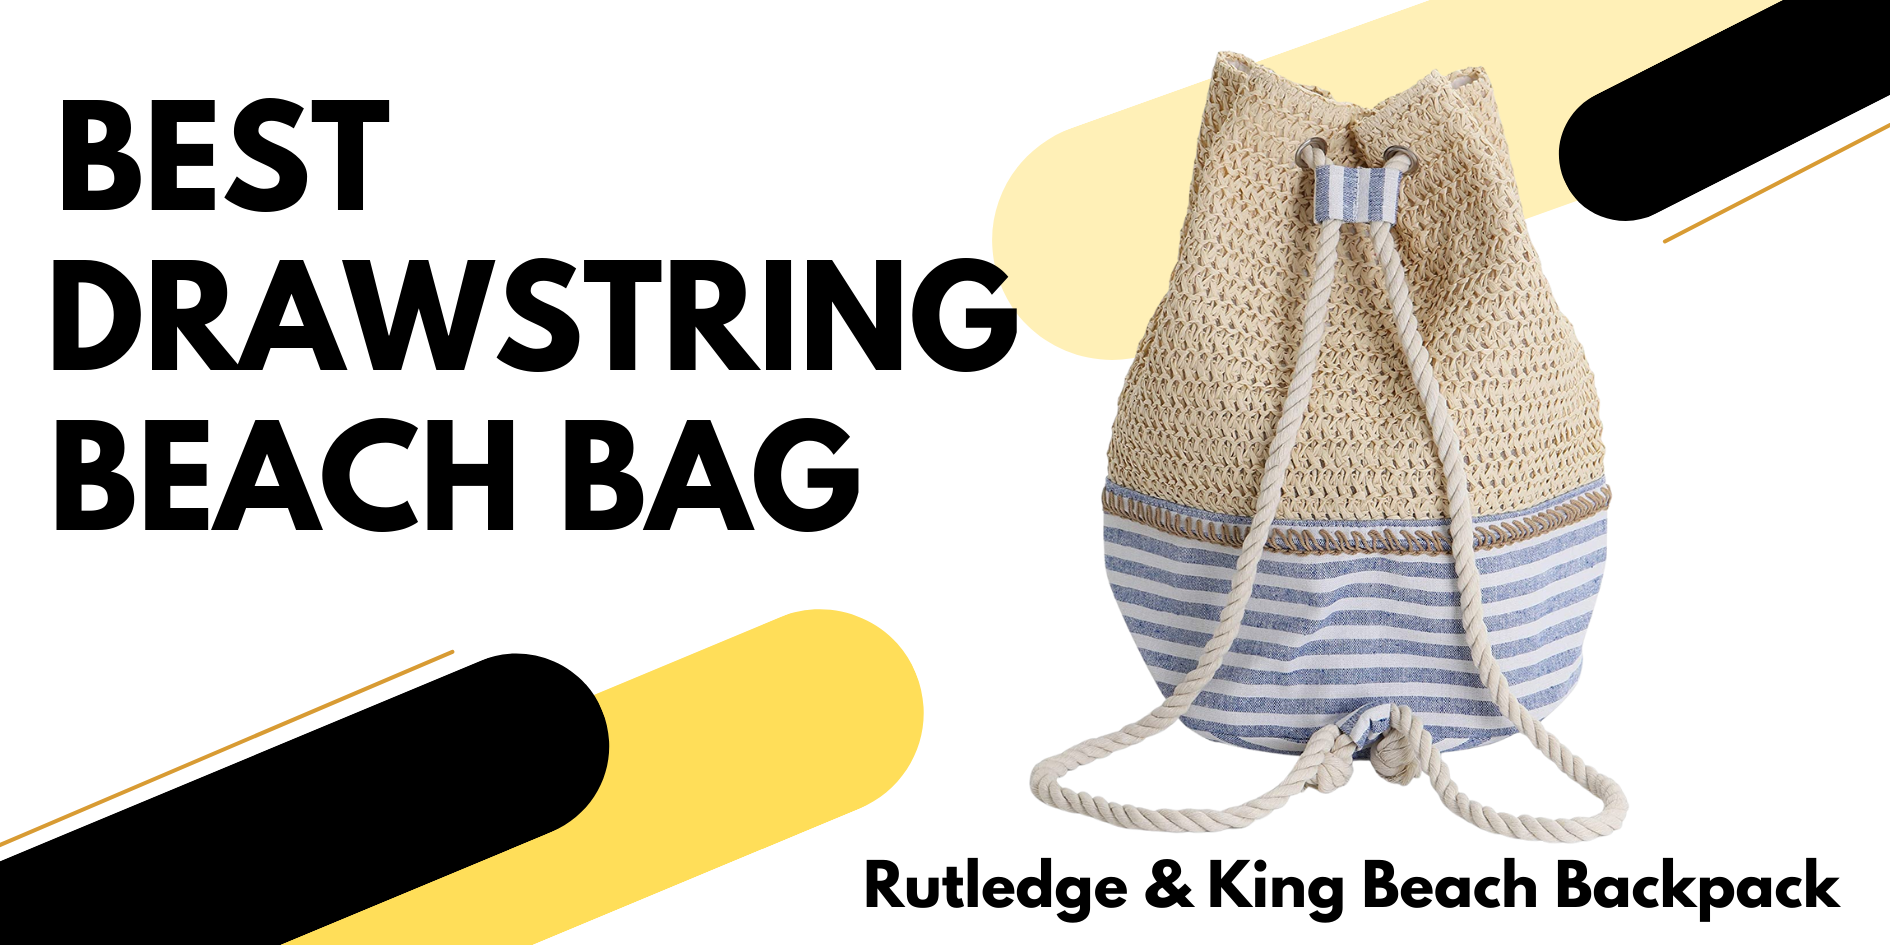 Rutledge & King Beach Backpack